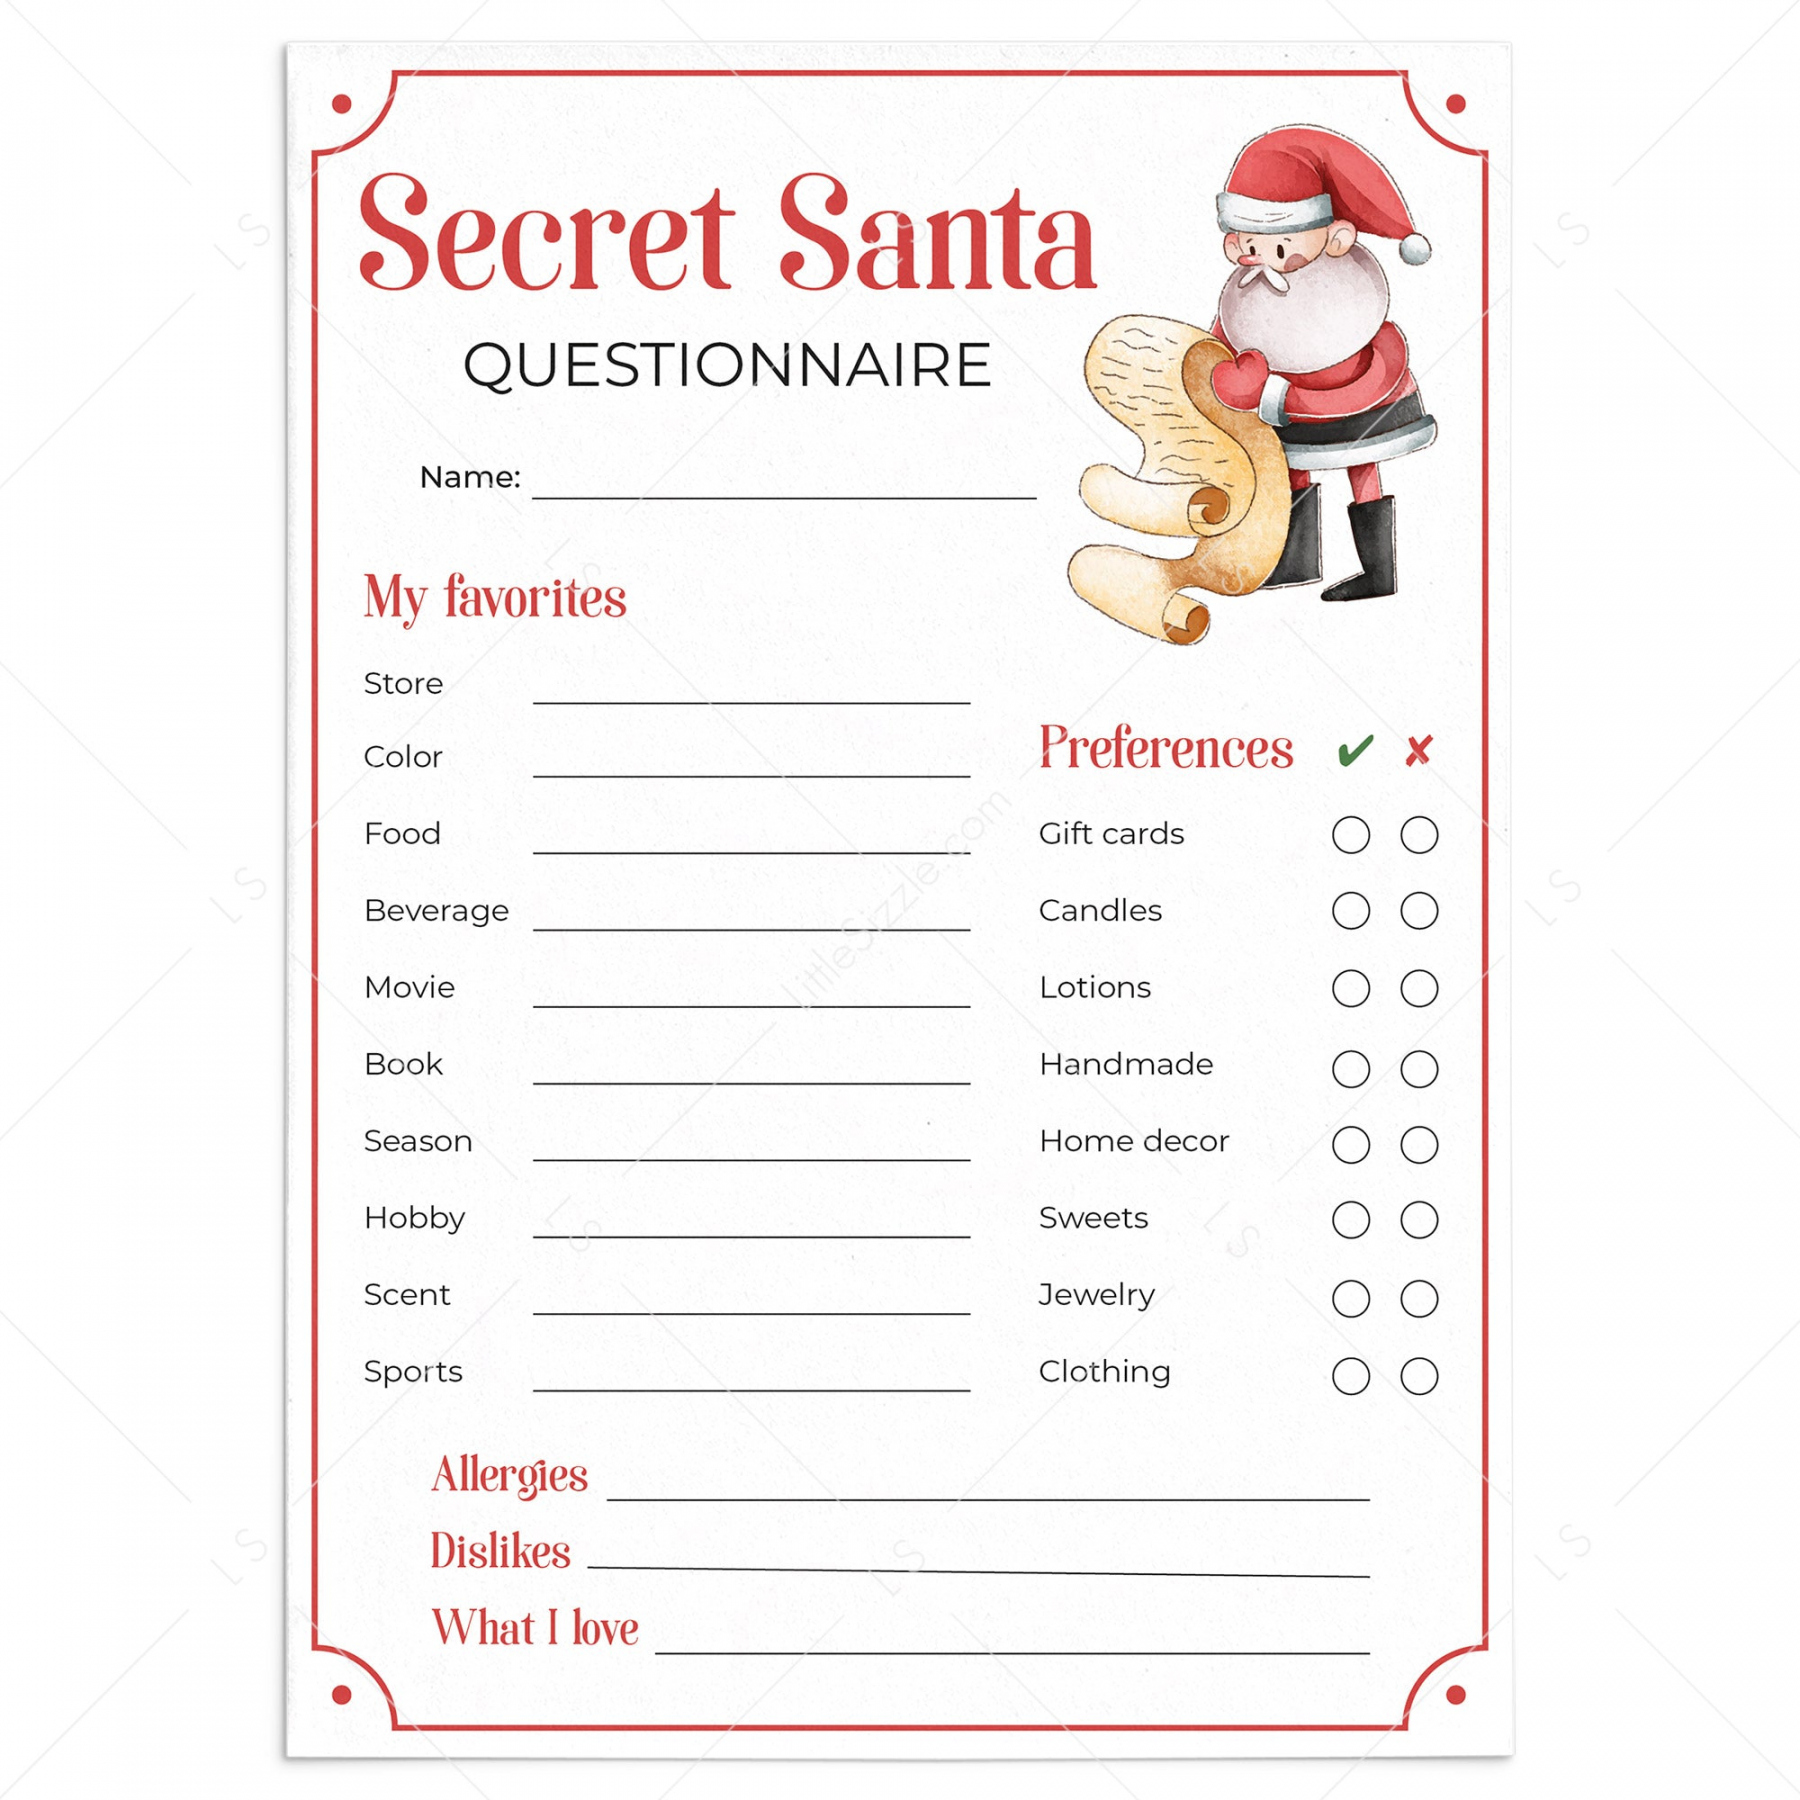 Secret Santa Questionnaire for Gift Exchange Printable - FREE Printables - Free Printable Secret Santa Questions